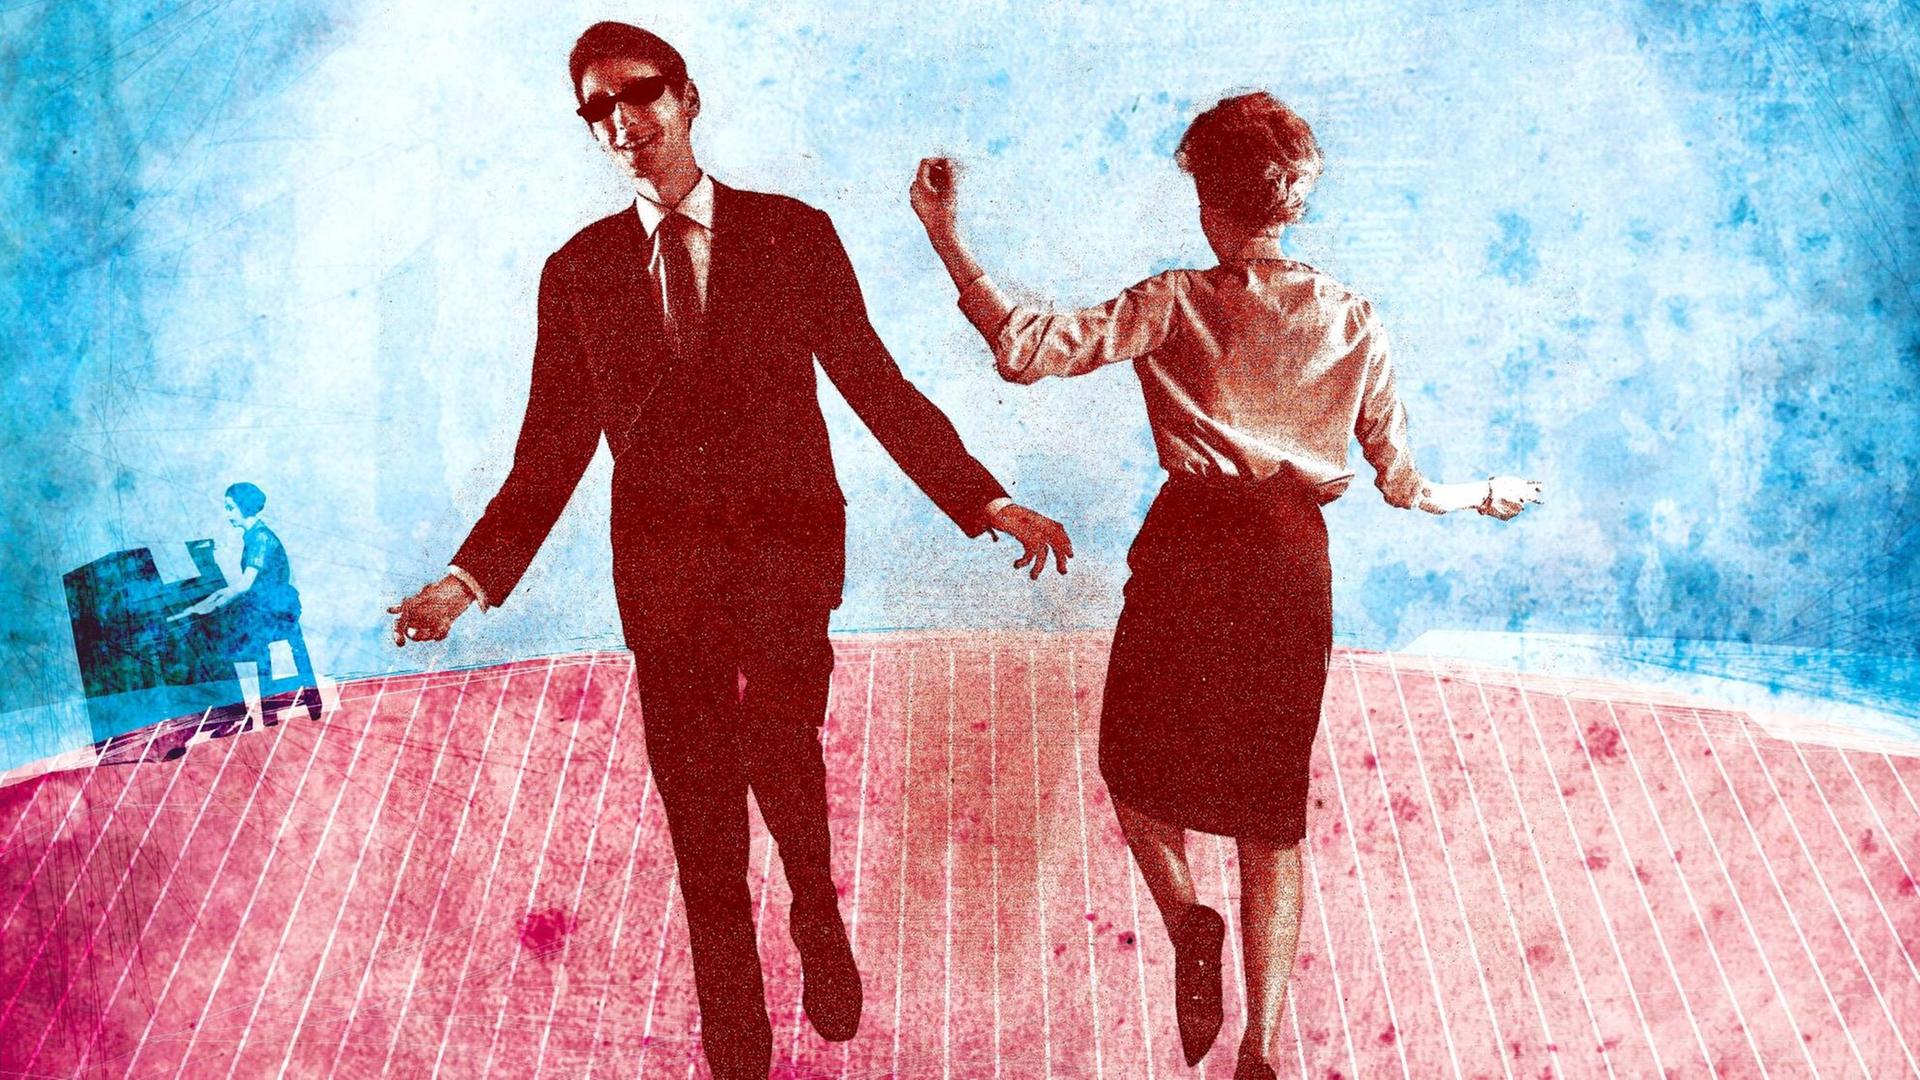 Ein Mann im Anzug und mit Sonnenbrille und eine Frau in Rock und Bluse tanzen auf einem rötlichen Bretterboden, der Mann mit dem Gesicht zum Betrachter, die Frau mit dem Gesicht zur blauen Wand im Hintergrund. Hinten links sitzt eine Pianistin an einem Klavier.